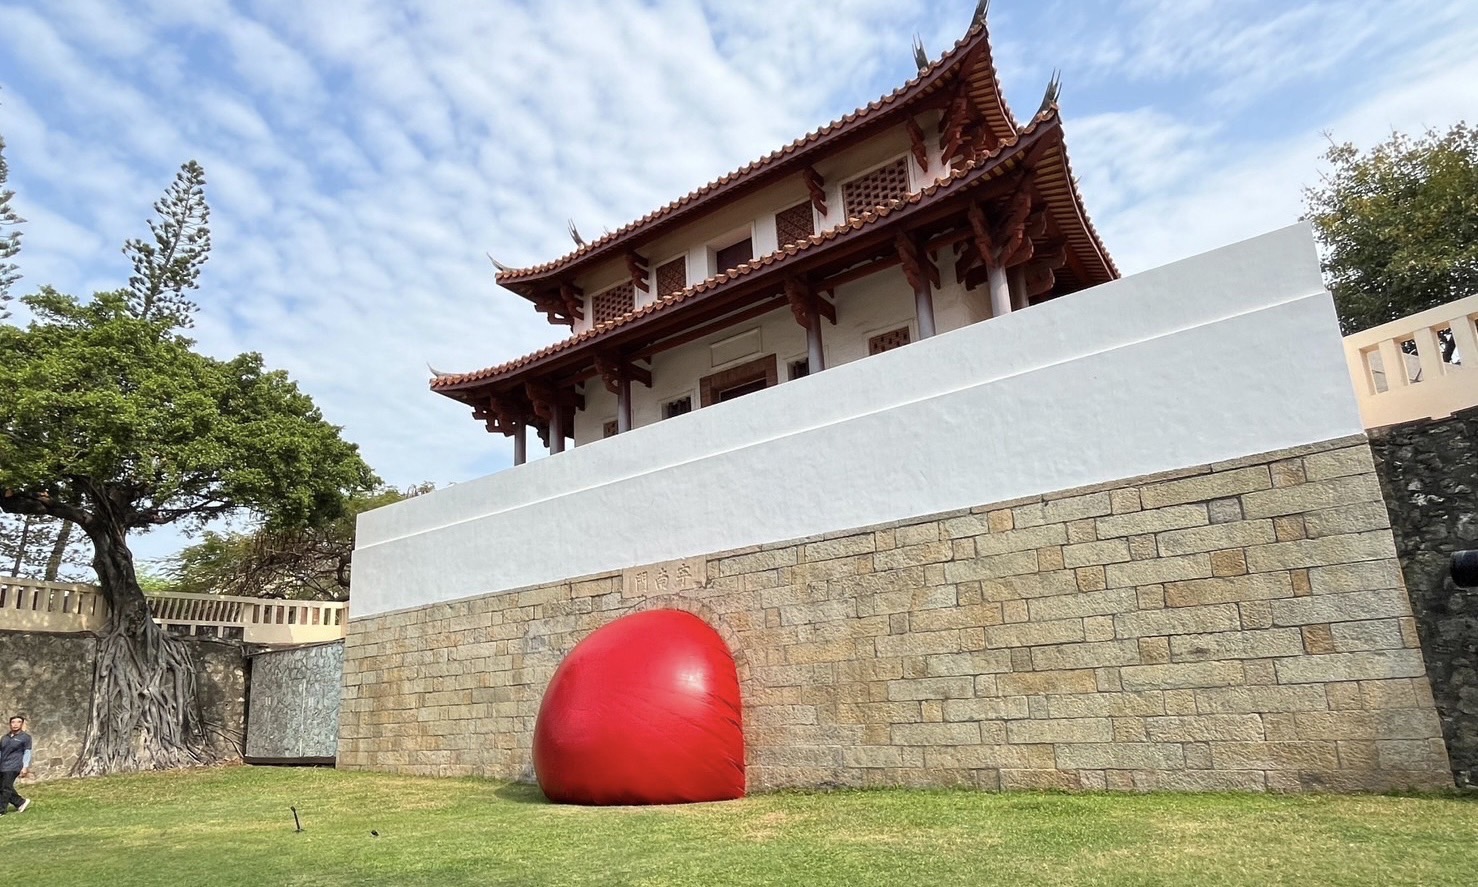  十多萬人次「追球」 跟著紅球認識臺南歷史街區 